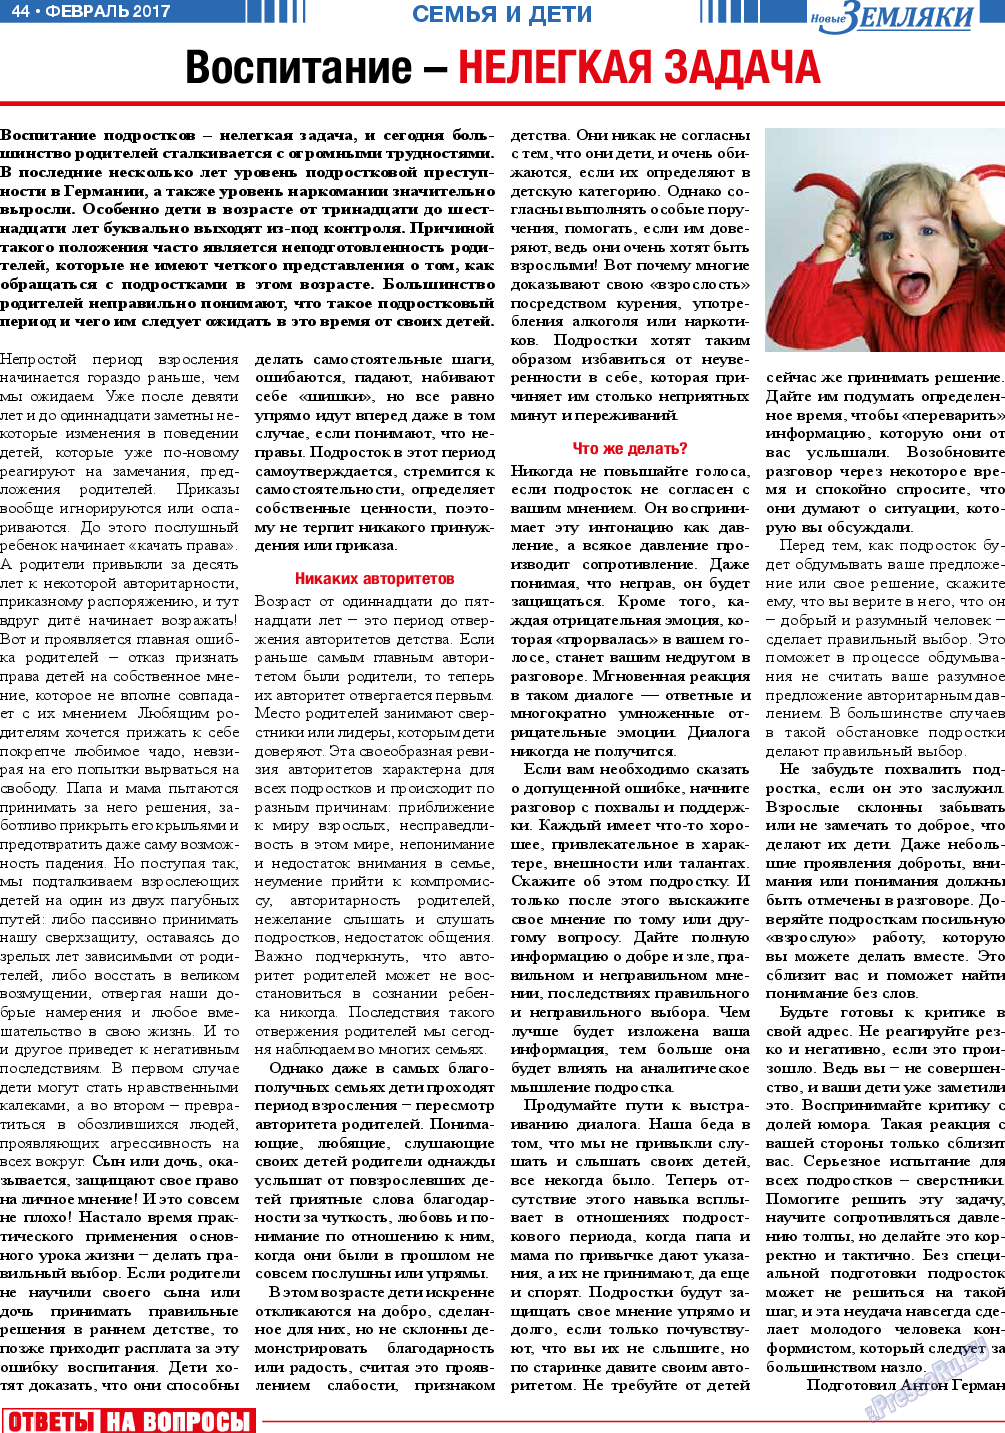 Новые Земляки (газета). 2017 год, номер 2, стр. 44